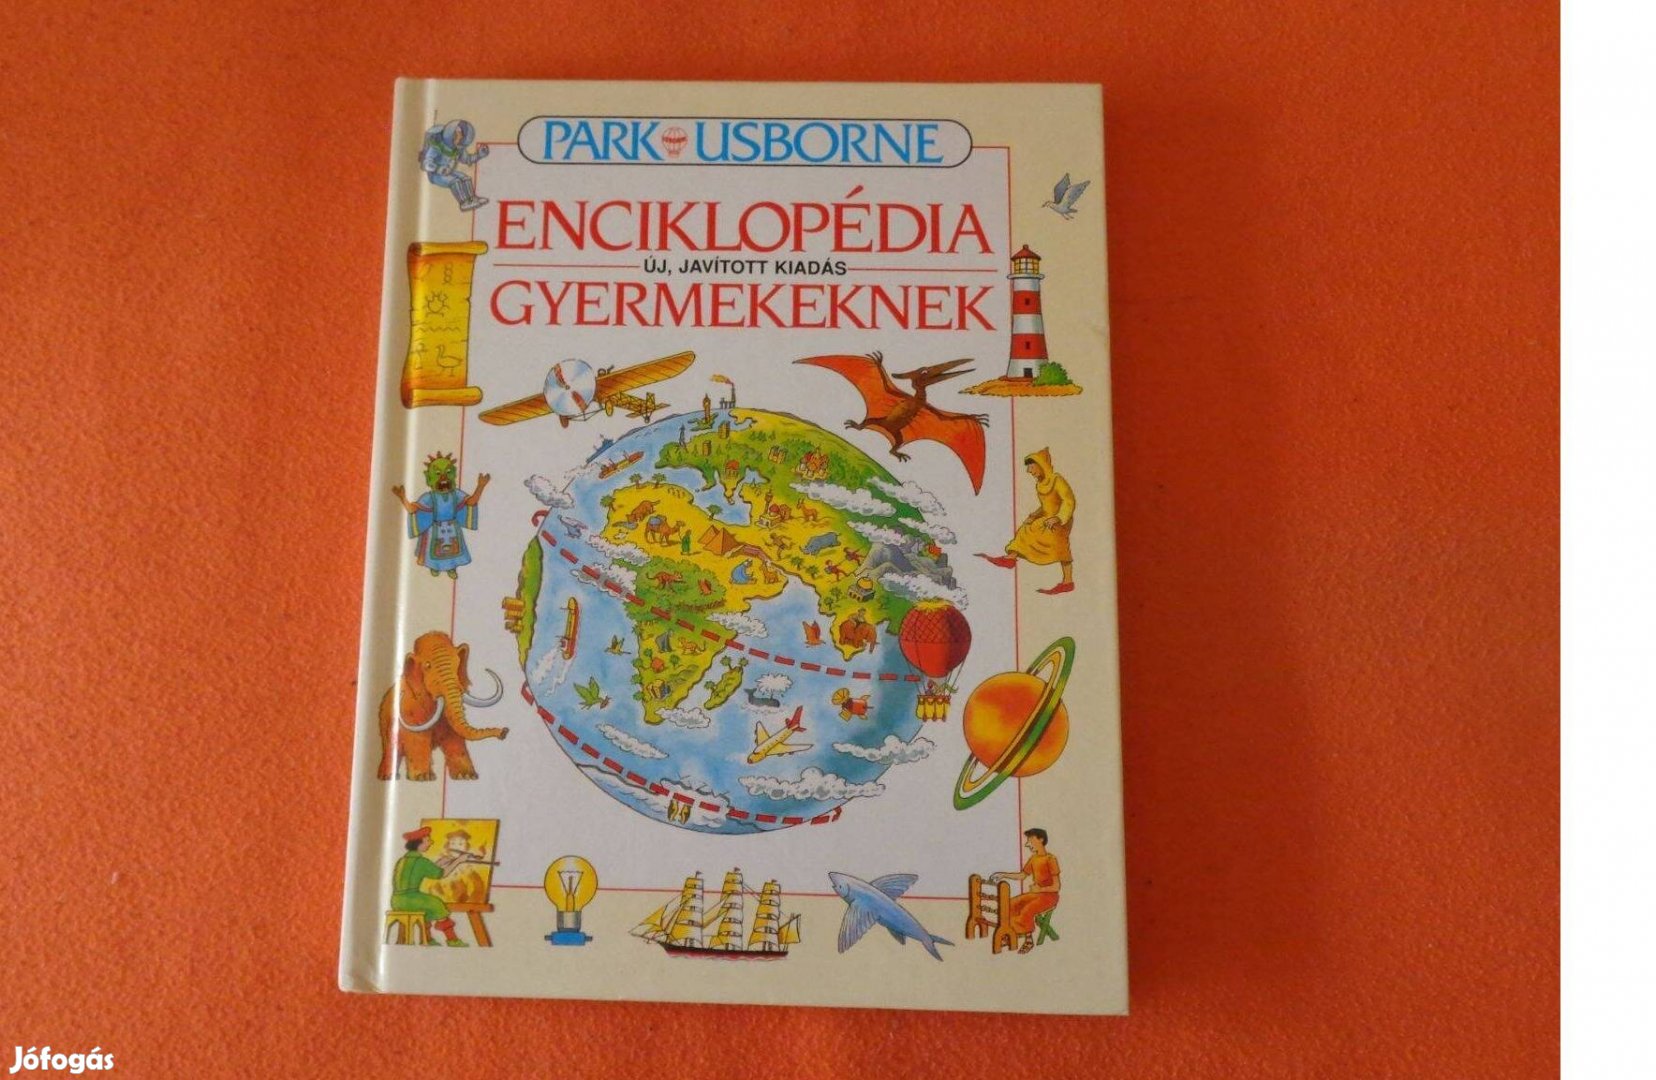 Enciklopédia gyermekeknek (Park Usborne)